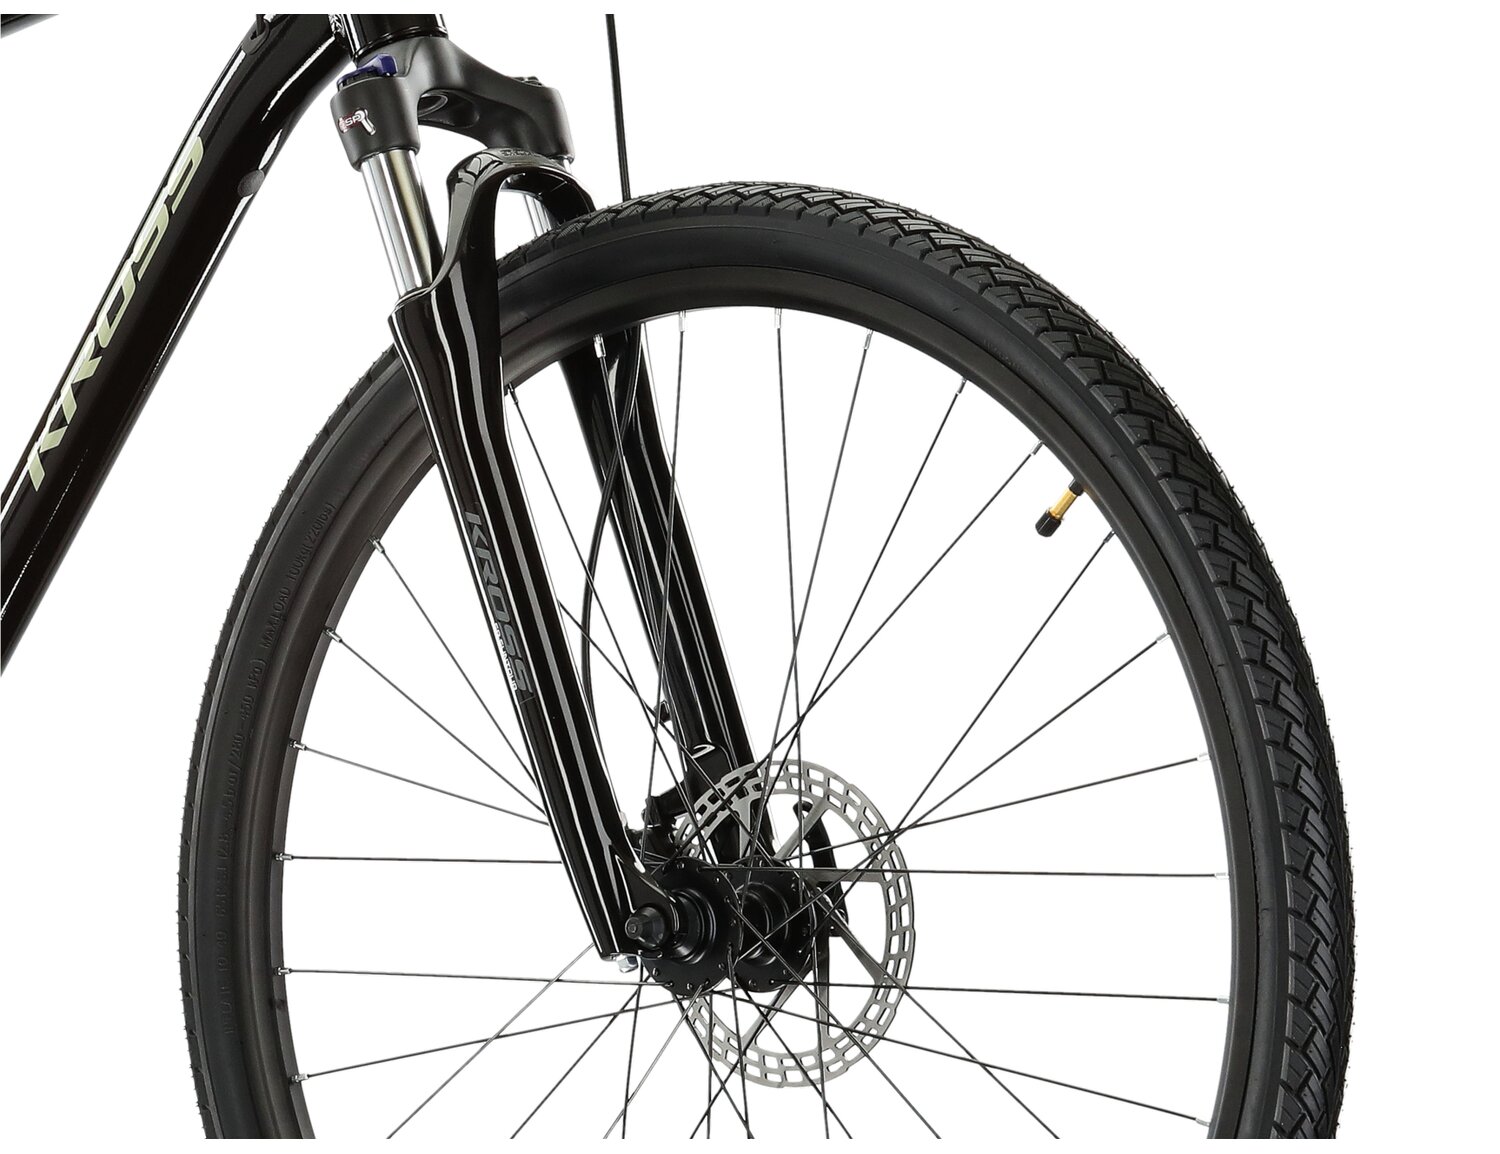 Aluminowa rama, amortyzowany widelec SR SUNTOUR NEX HLO oraz opony Wanda w rowerze crossowym KROSS Evado 5.0 